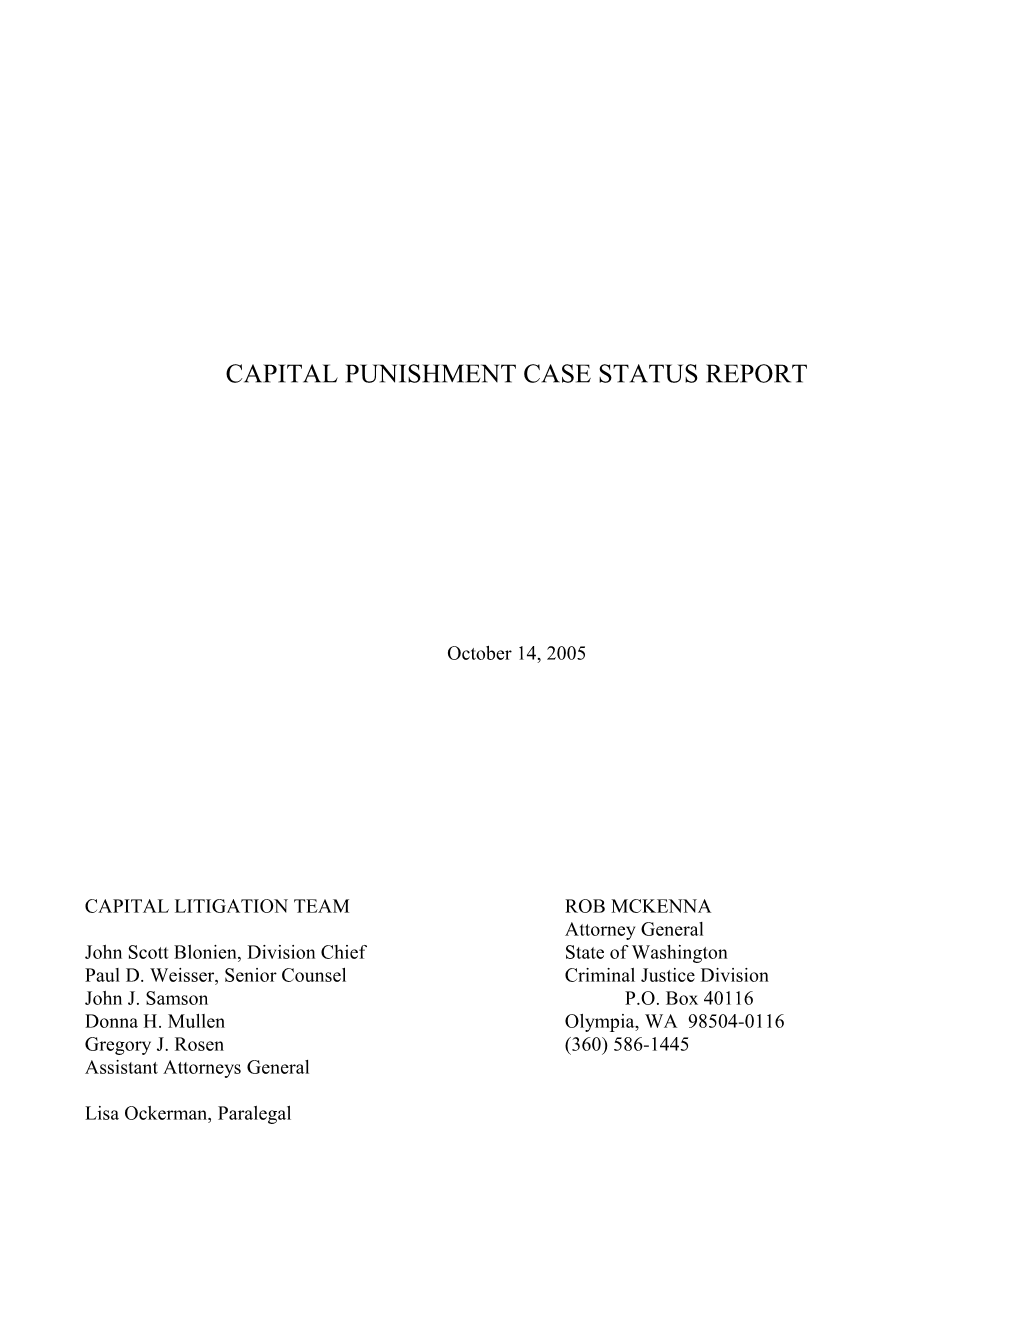 Capital Punishment Case Status Report s1